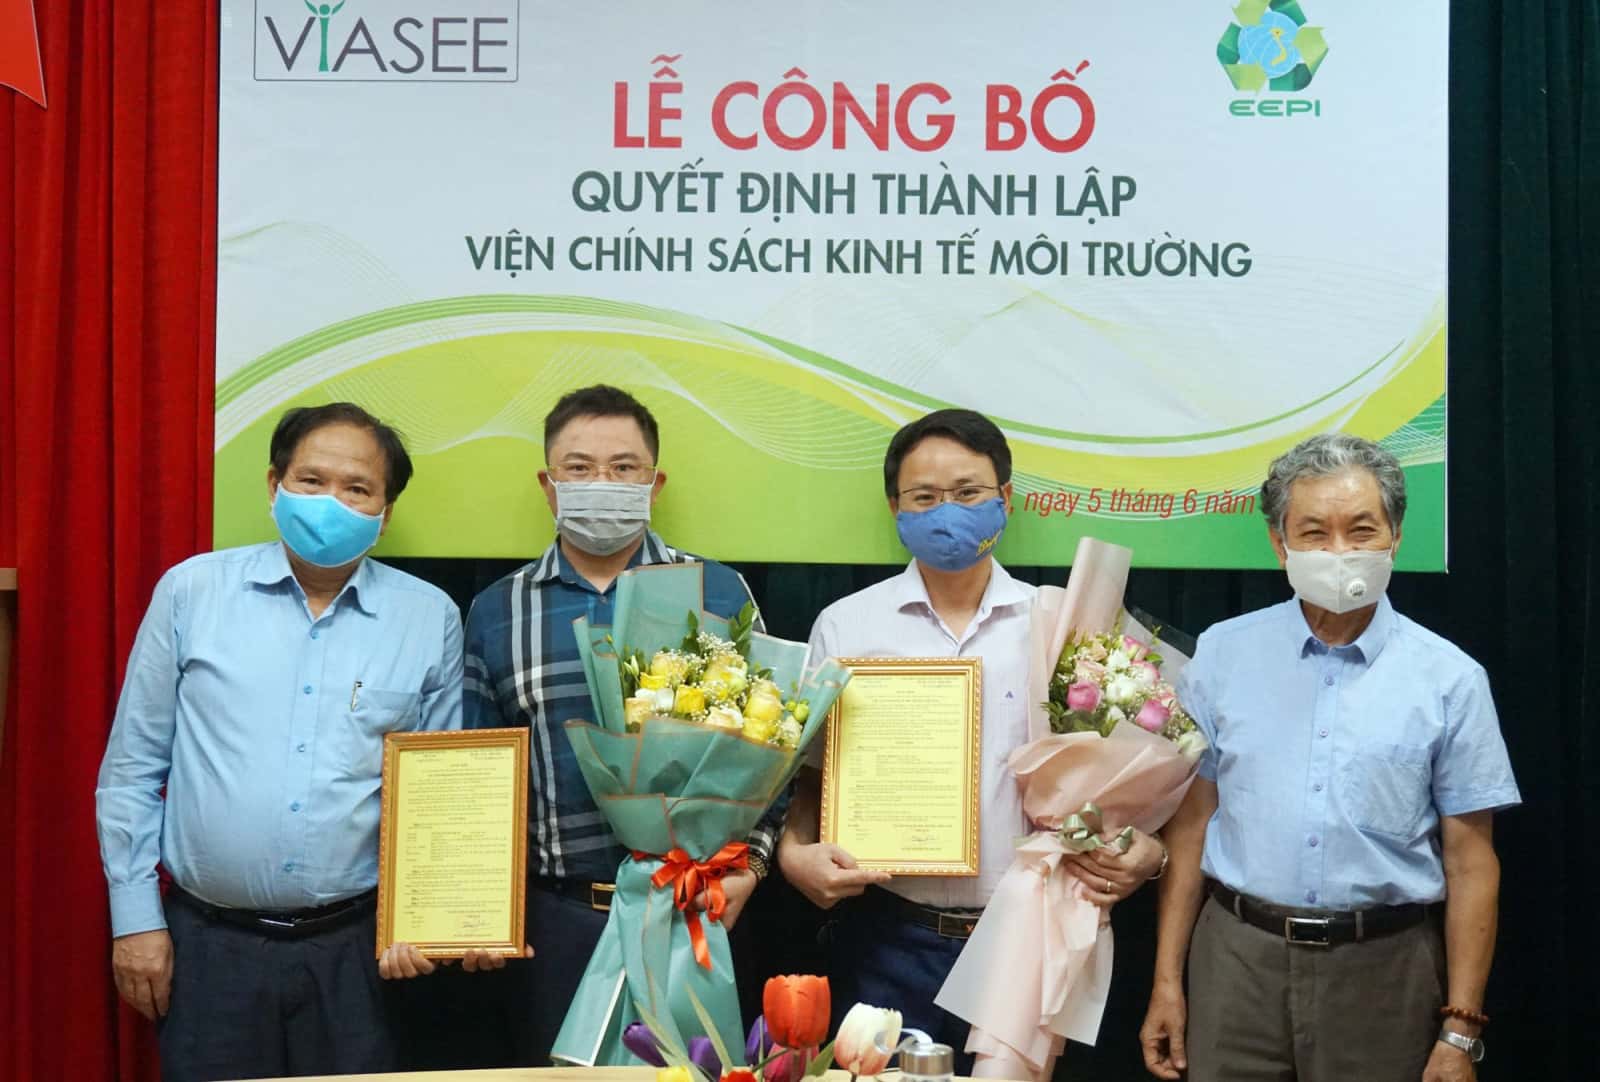 Nhà báo Nguyễn Tường Quân, Thạc sỹ, Luật sư Hà Huy Phong (đứng thứ 2 và thứ 3 từ bên trái sang) giữ chức danh Viện phó, Ủy viên Hội đồng Quản lý.